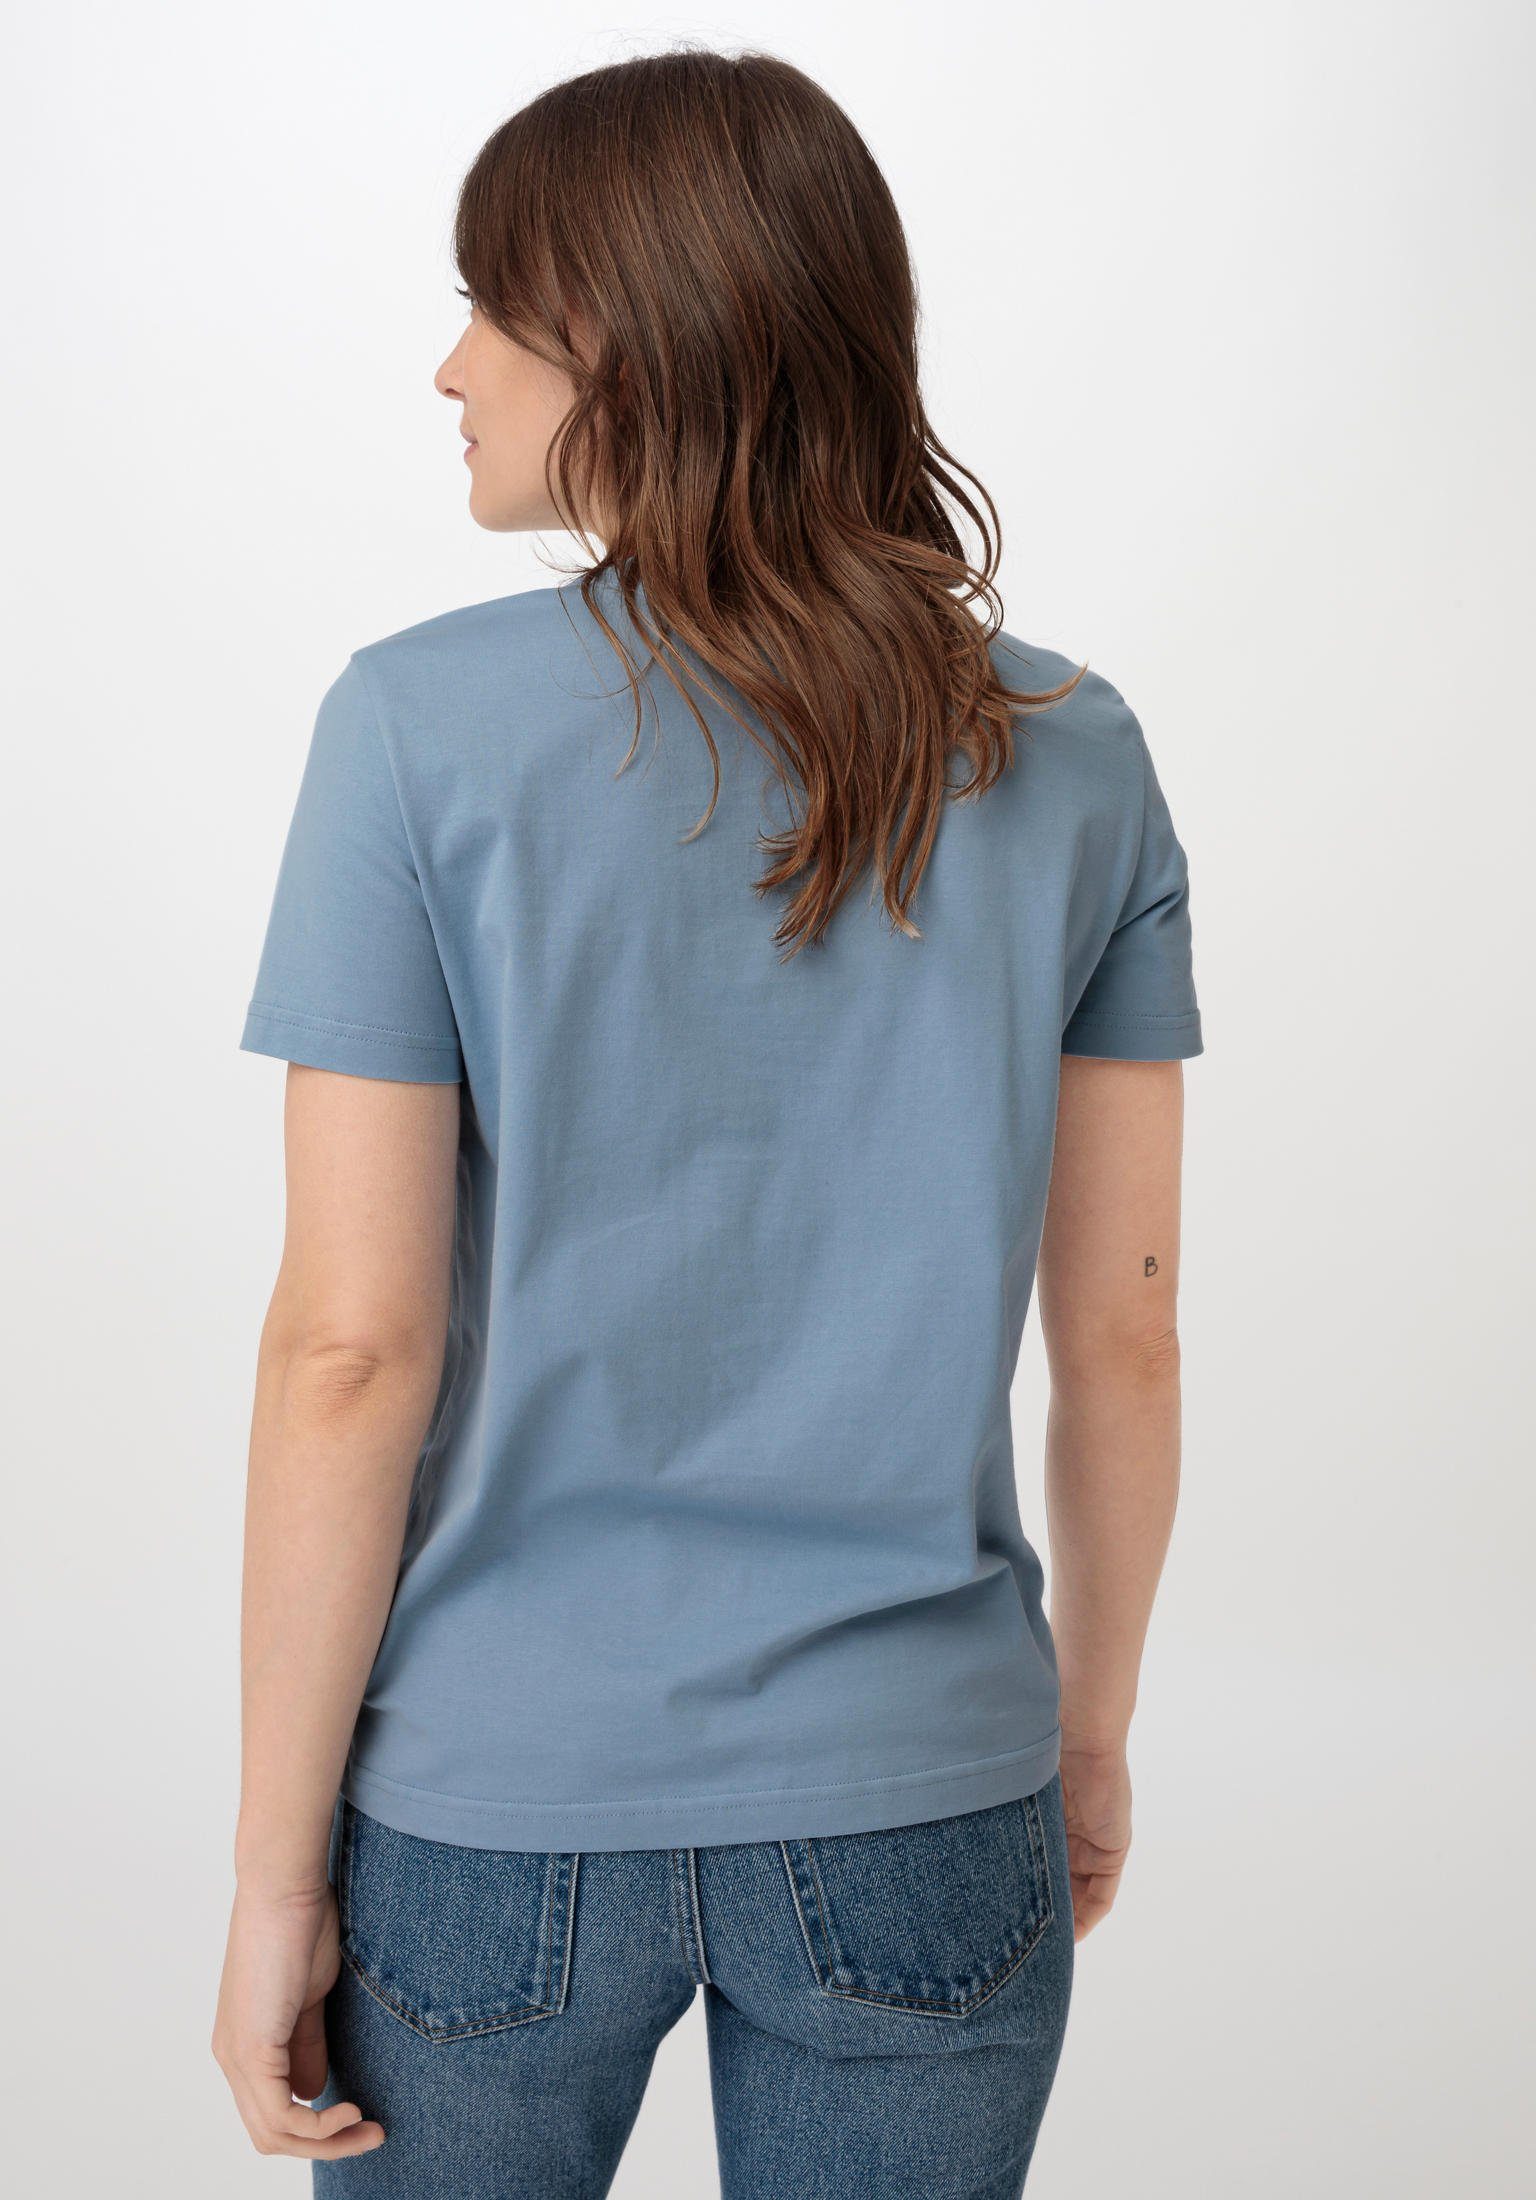 T-Shirt Kurzarm morgenblau Hessnatur Bio-Baumwolle reiner aus